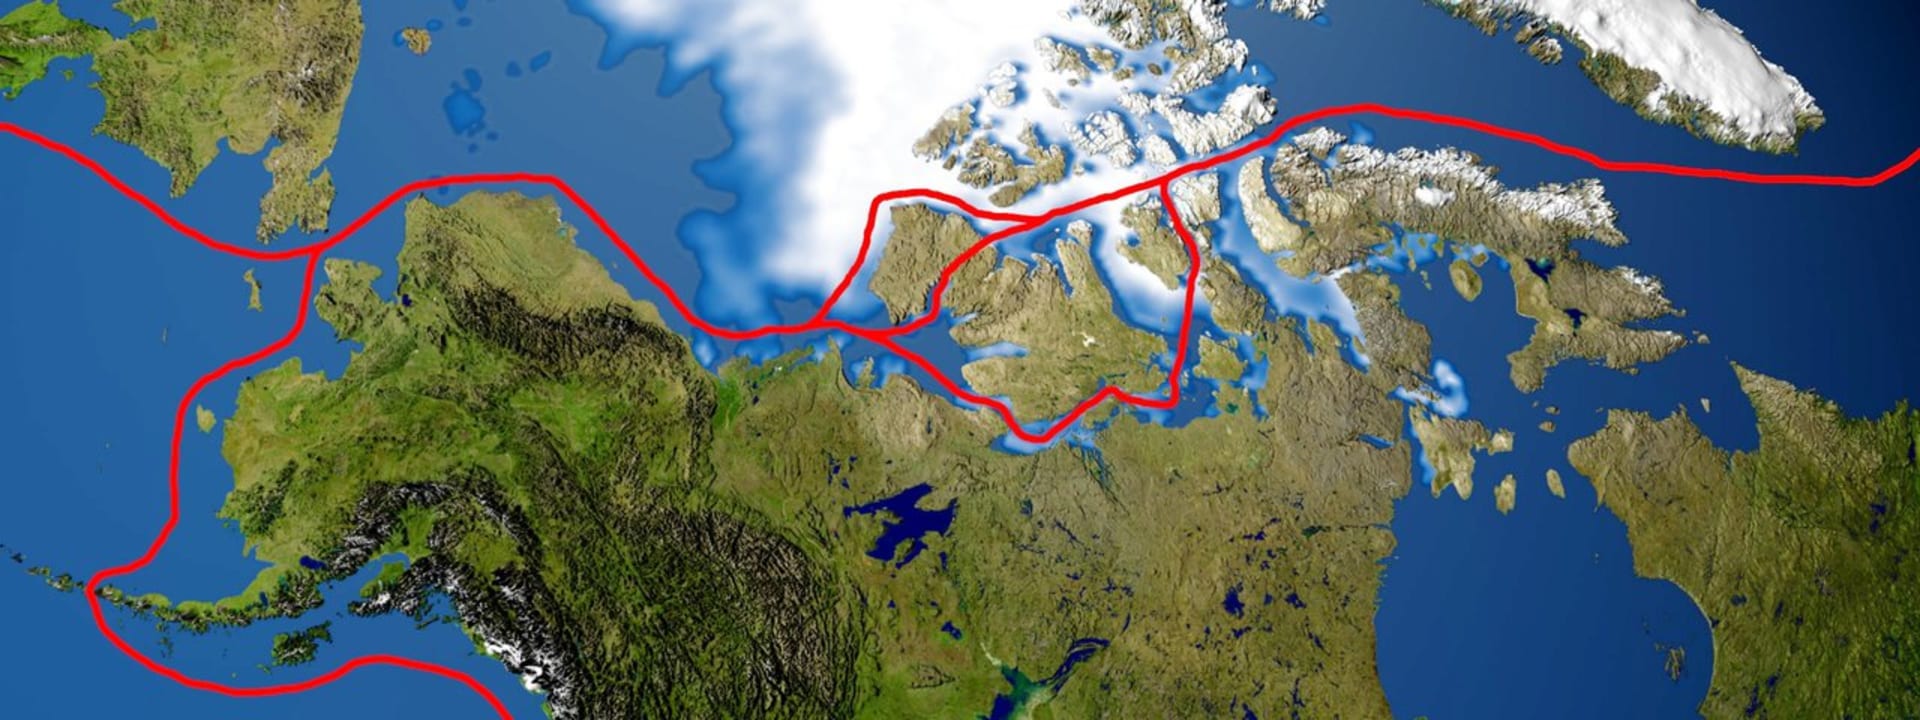 Severozápadní cesta vede labyrintem kanadských ostrovů